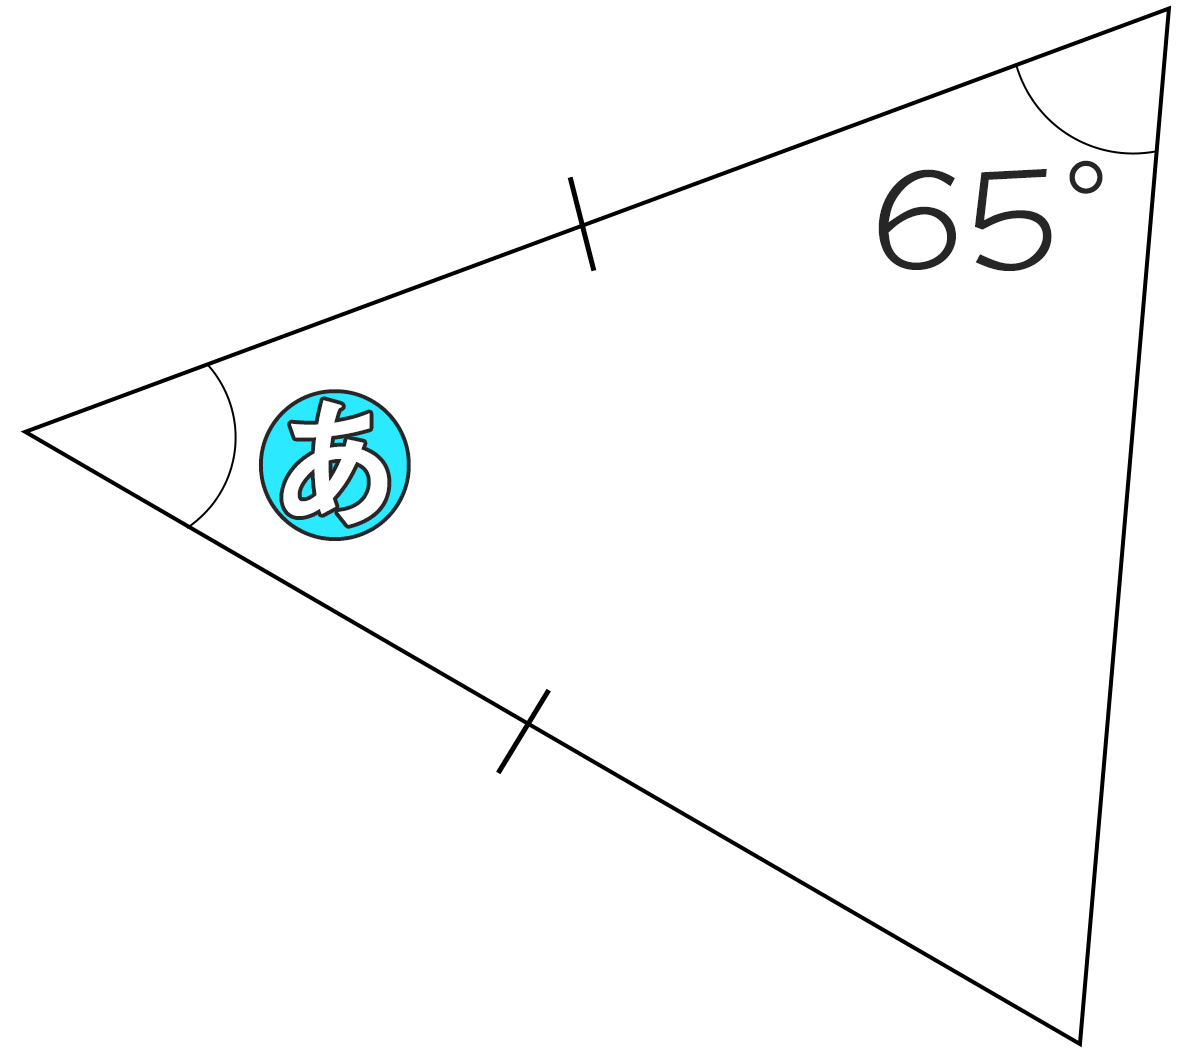 二等辺三角形の底角が65°のとき頂角の角度は何度ですか